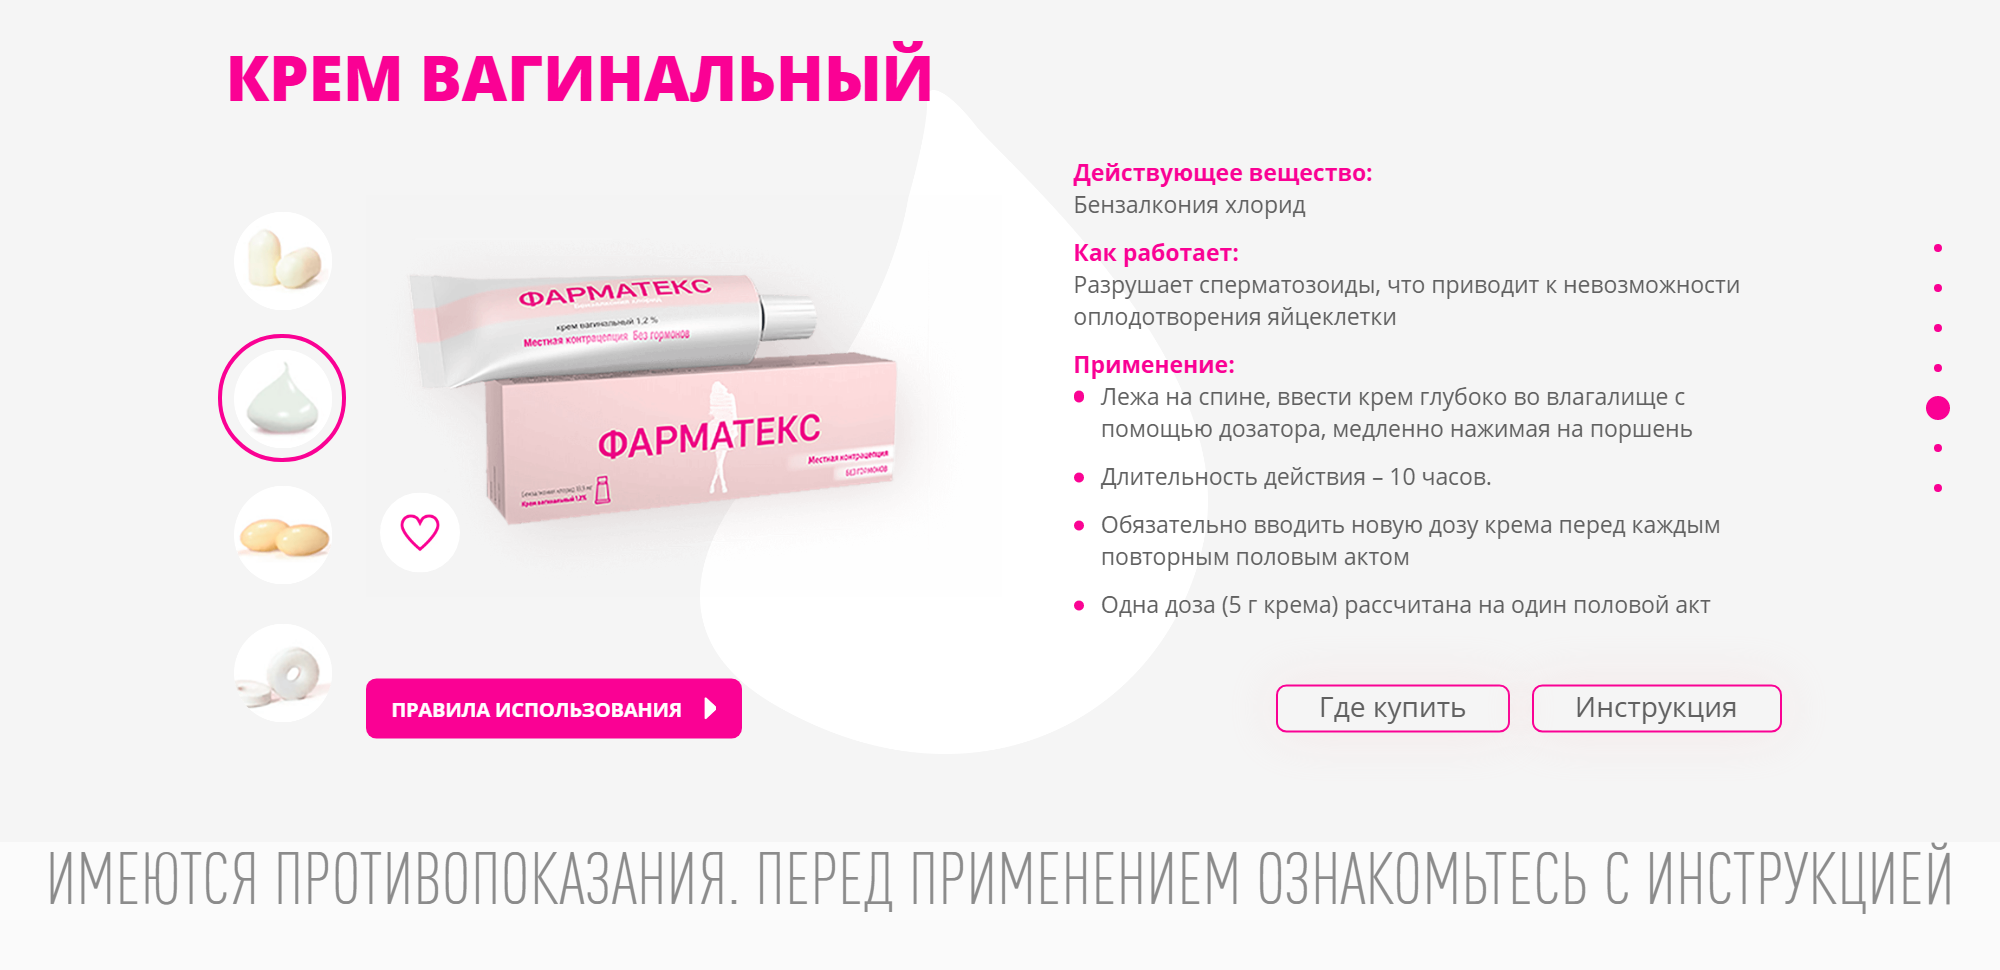 Описание вагинального крема «Фарматекс». Источник: pharmatex.ru